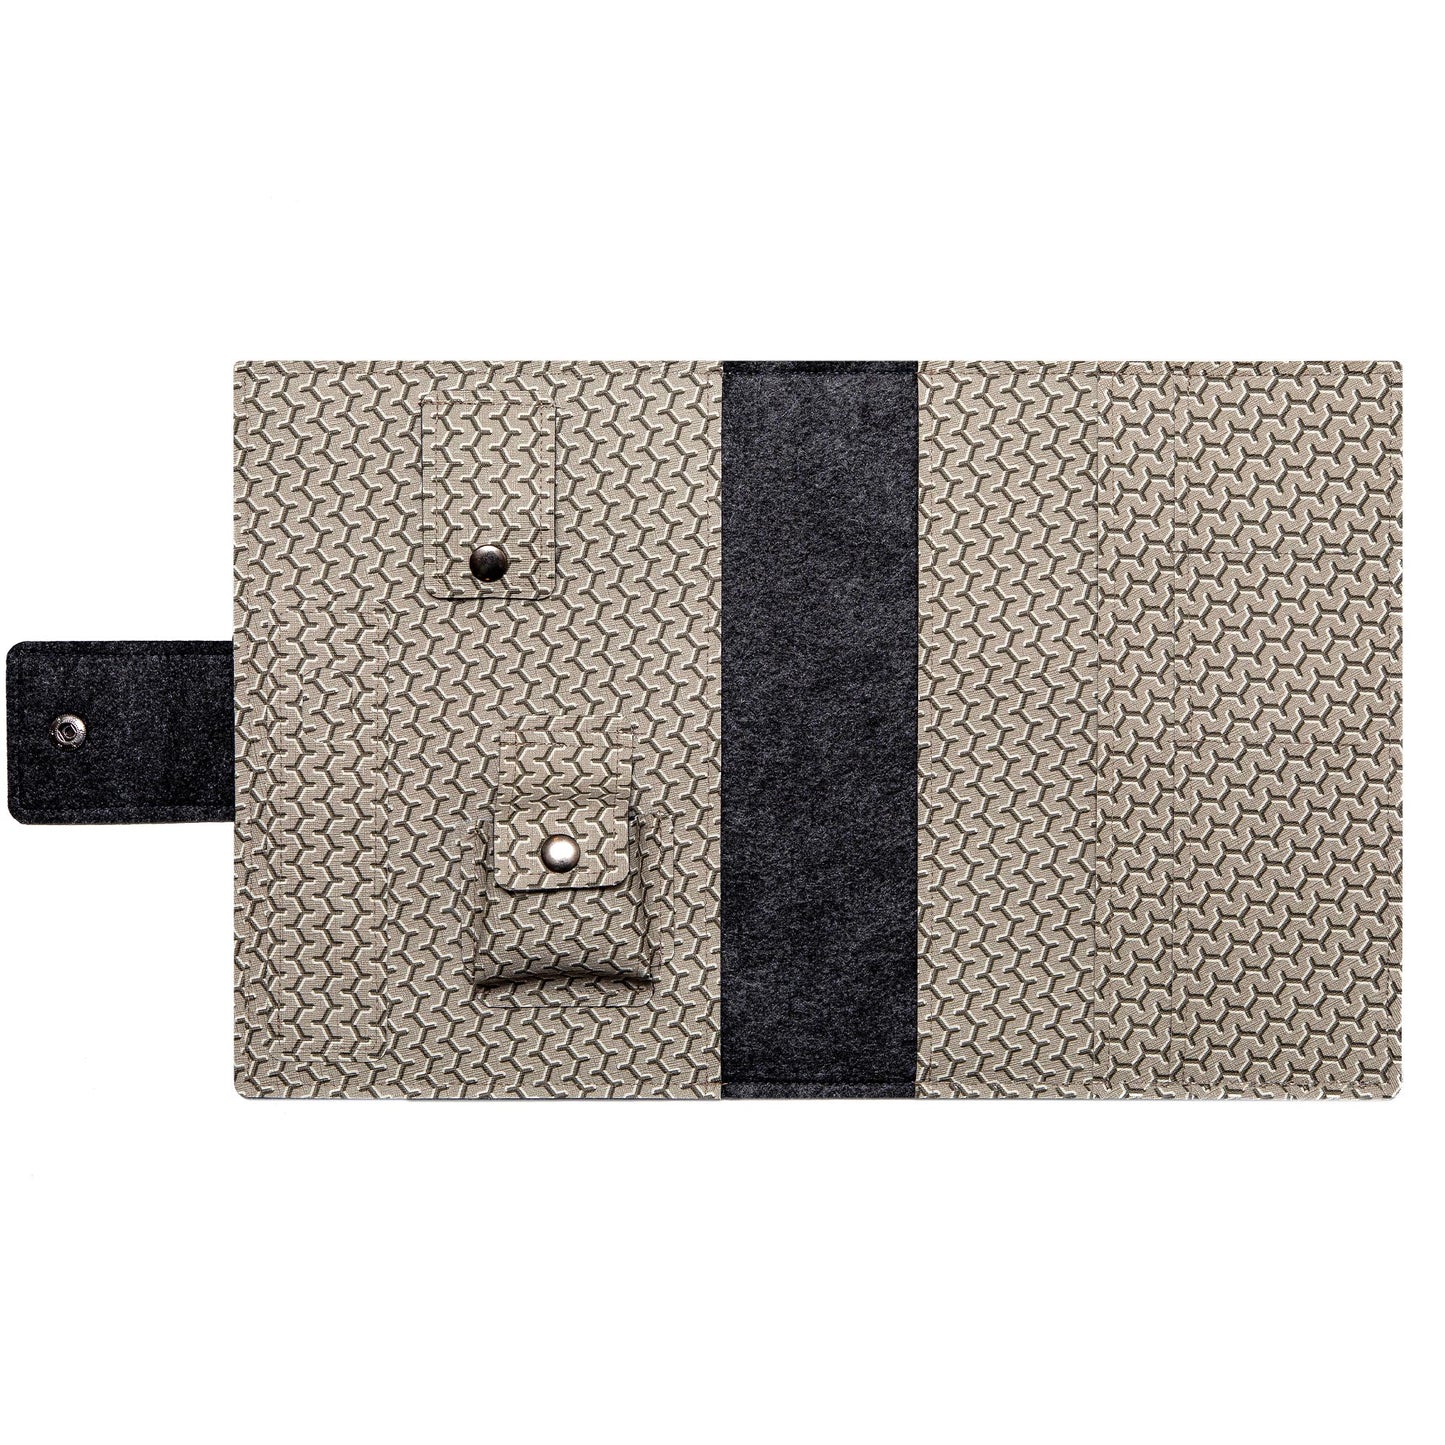 Handmade iPad Cover - Grey Faux Leather Folio for Apple iPad Air/Pro/Mini